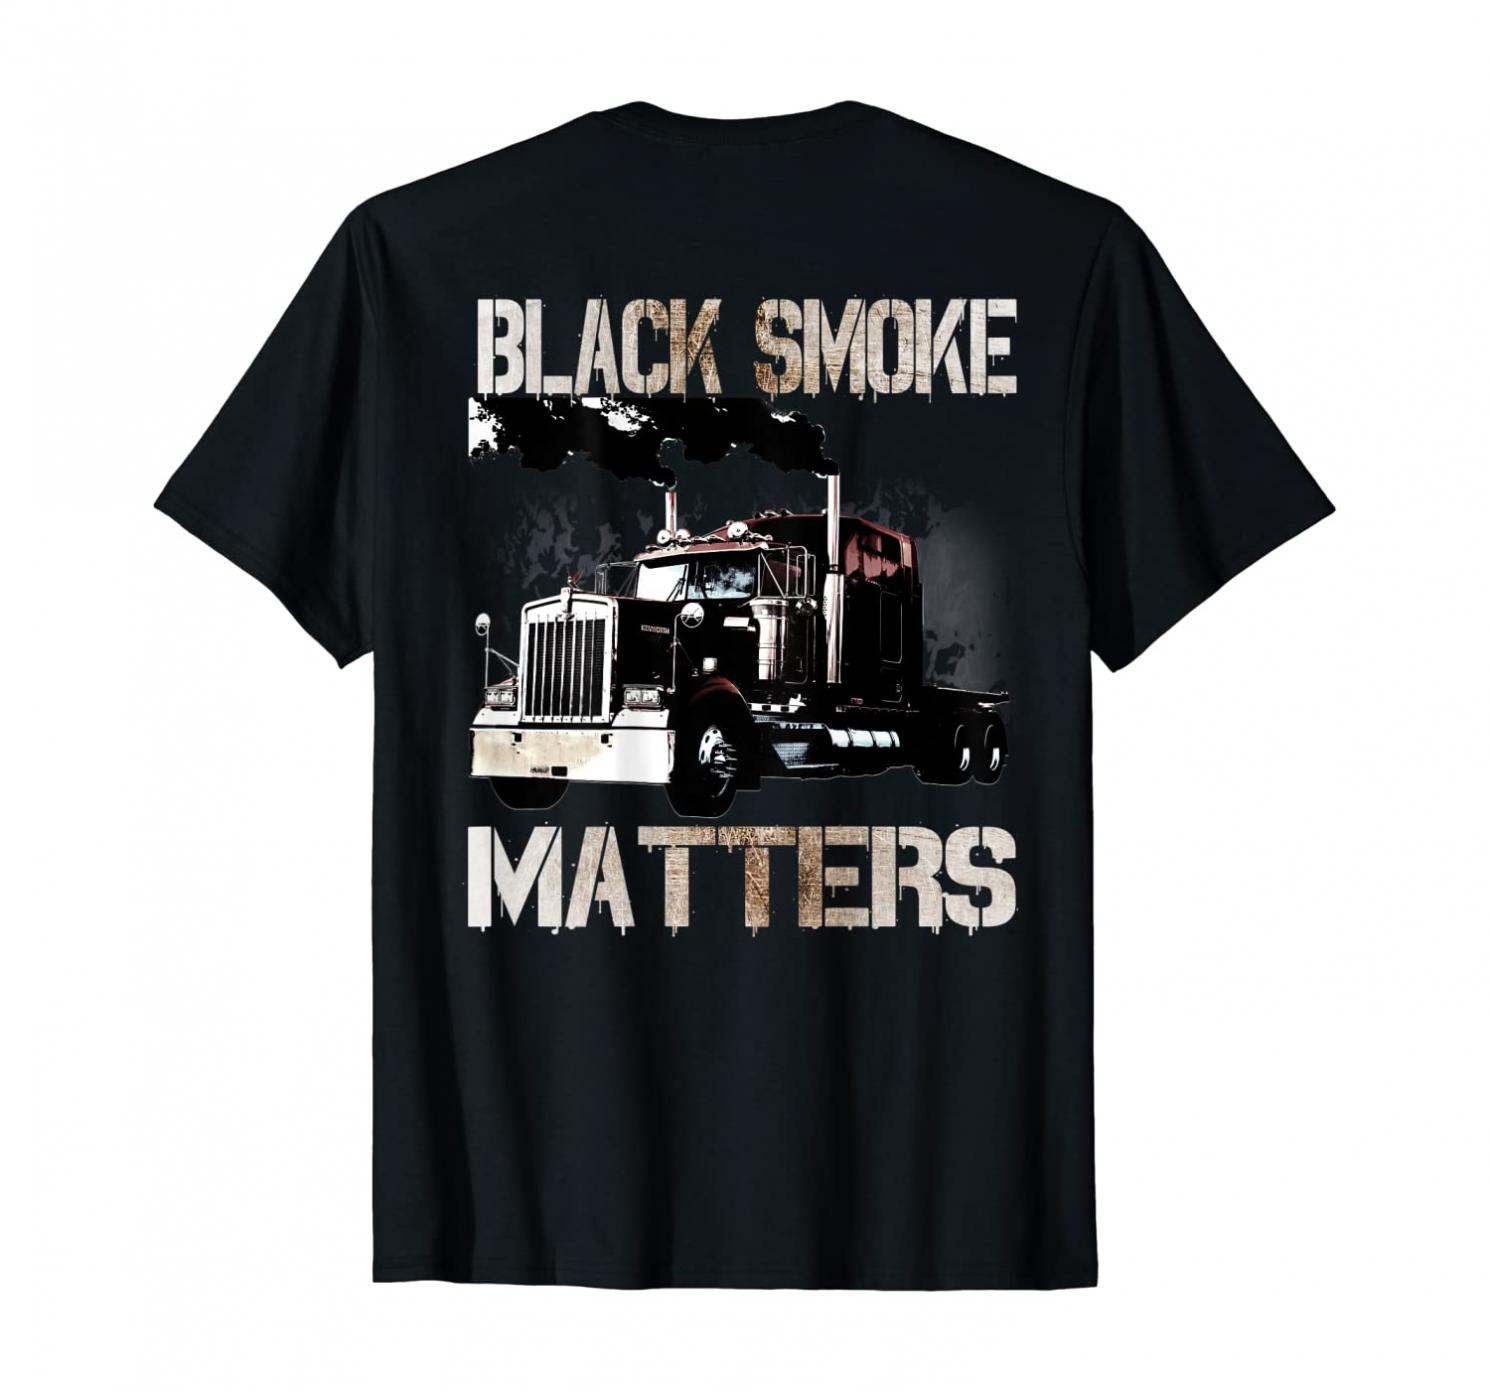 Trucker Tractor Trailer 18 Wheeler Design On Back T-Shirt